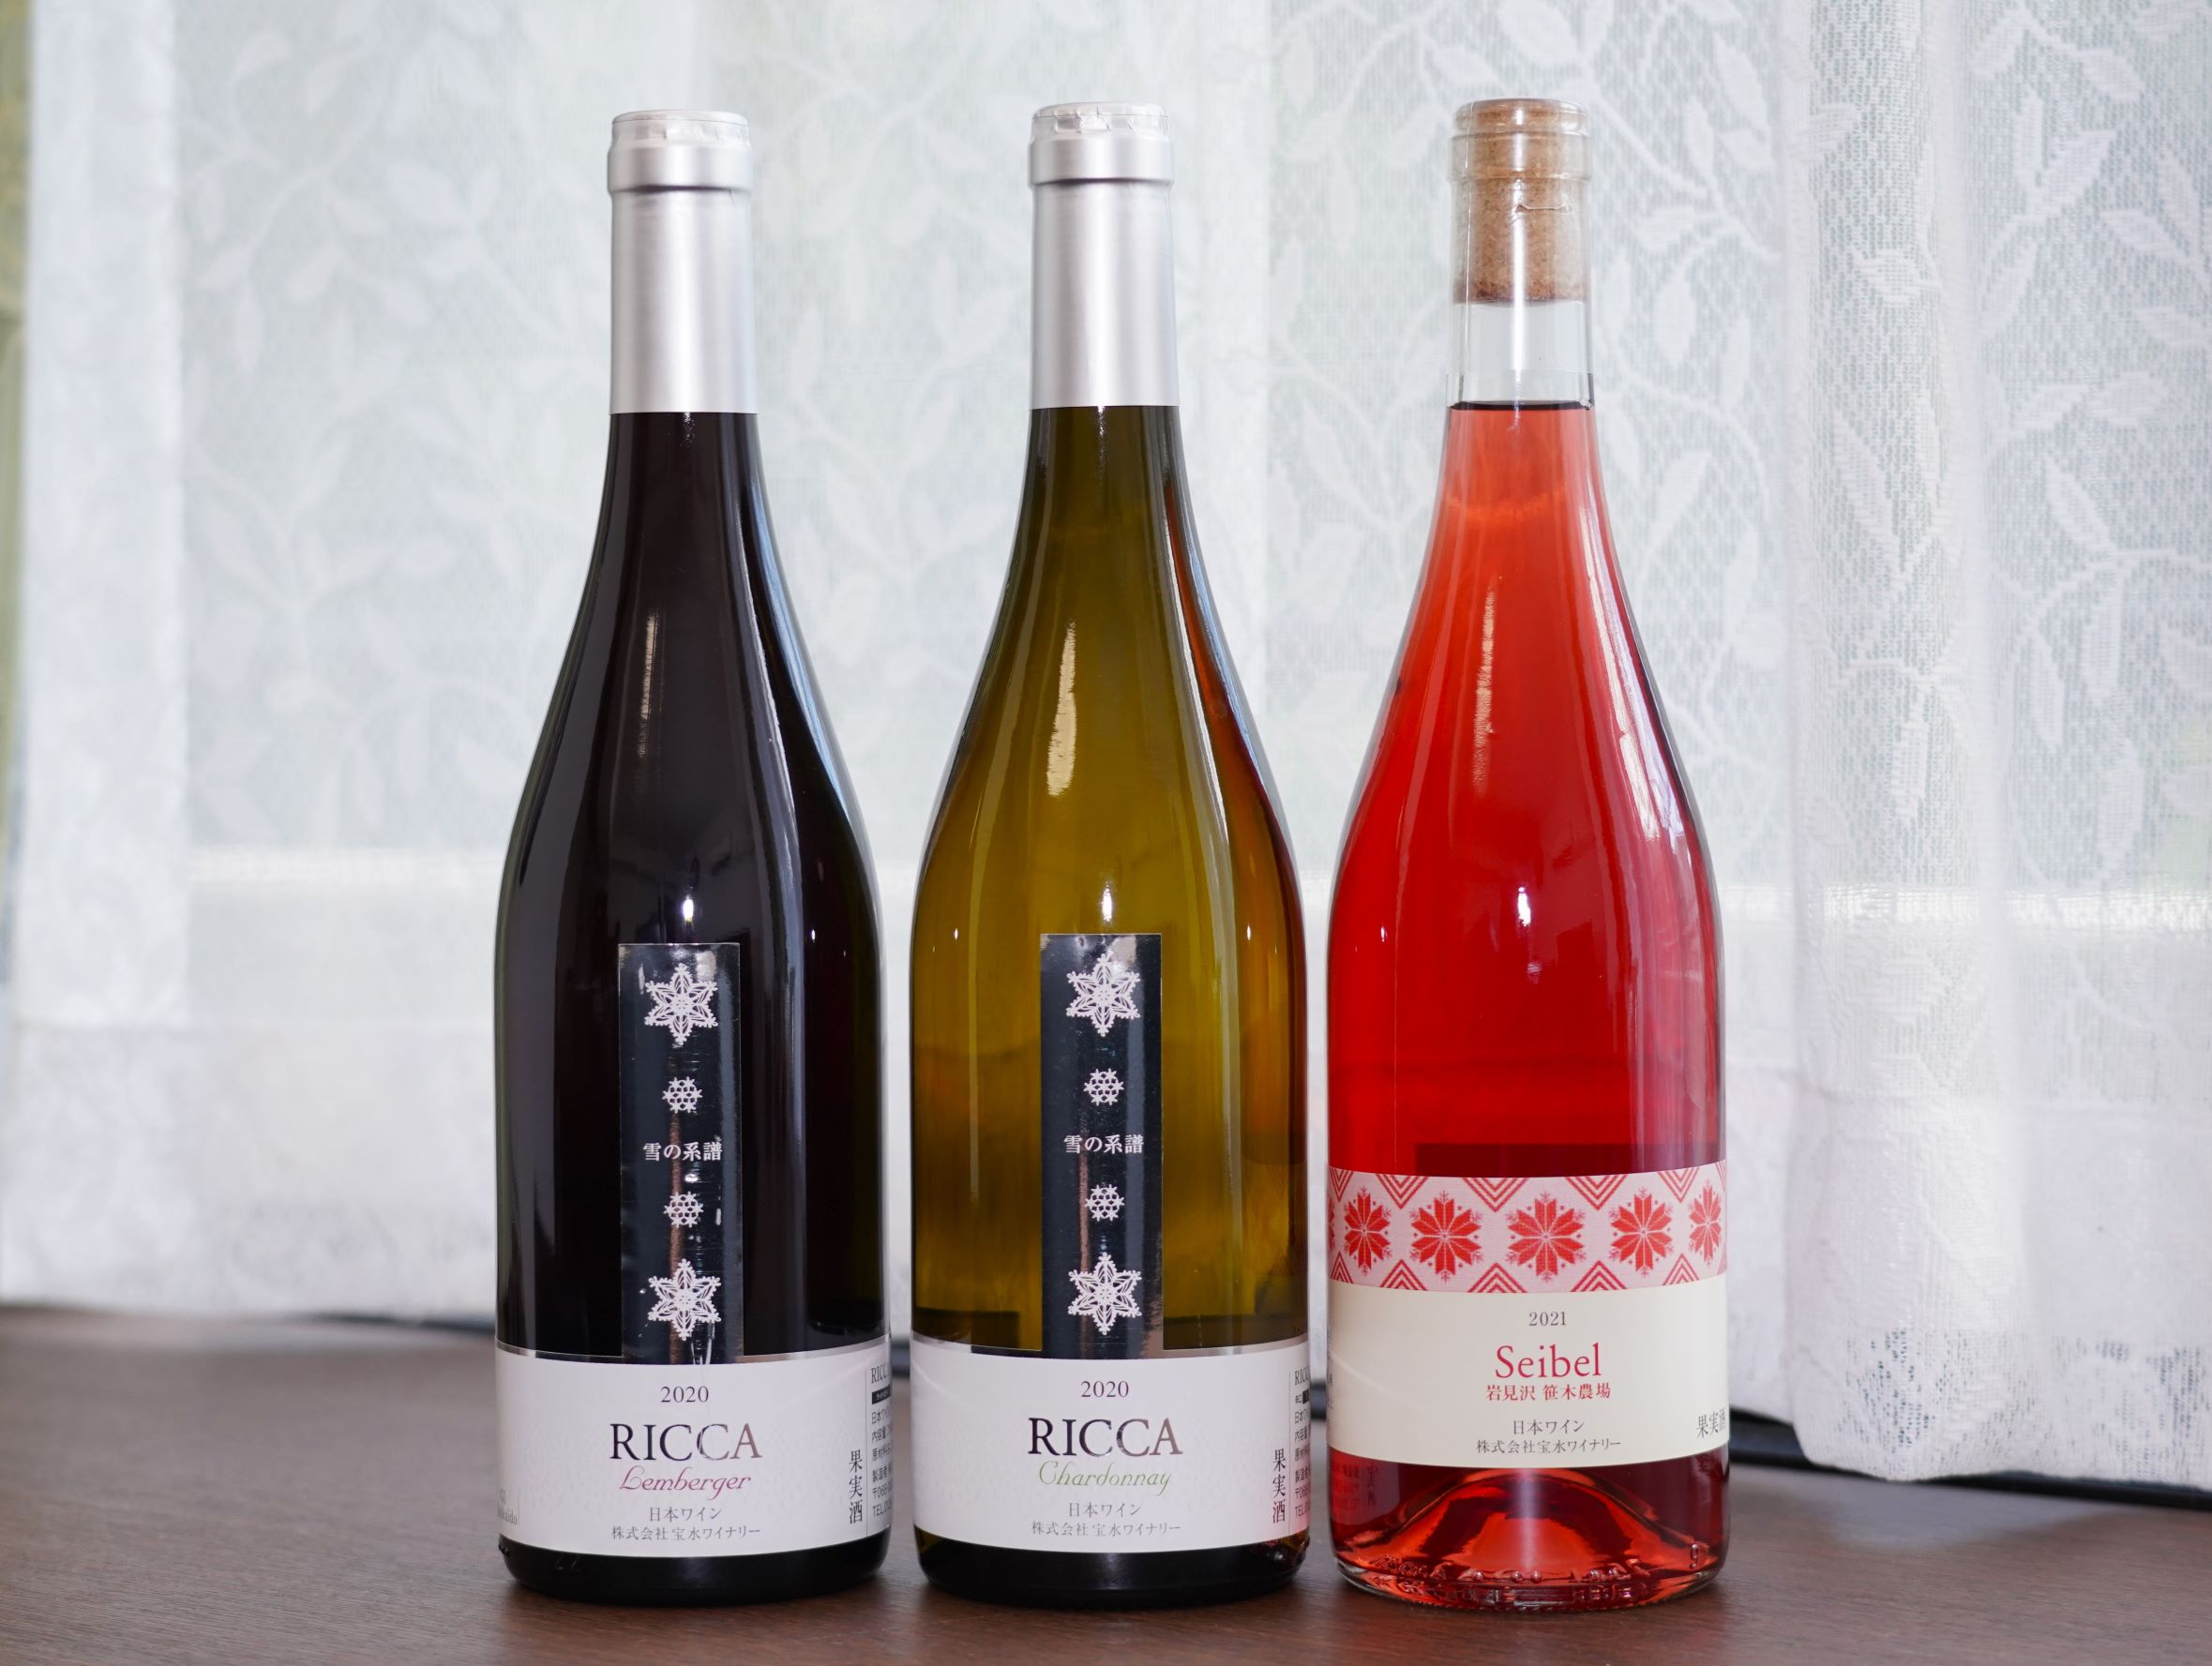 宝水ワイナリーのワイン。自社畑ブドウを使用した「RICCA」シリーズのほか、他の農場で採れたブドウで作ったワインもある。